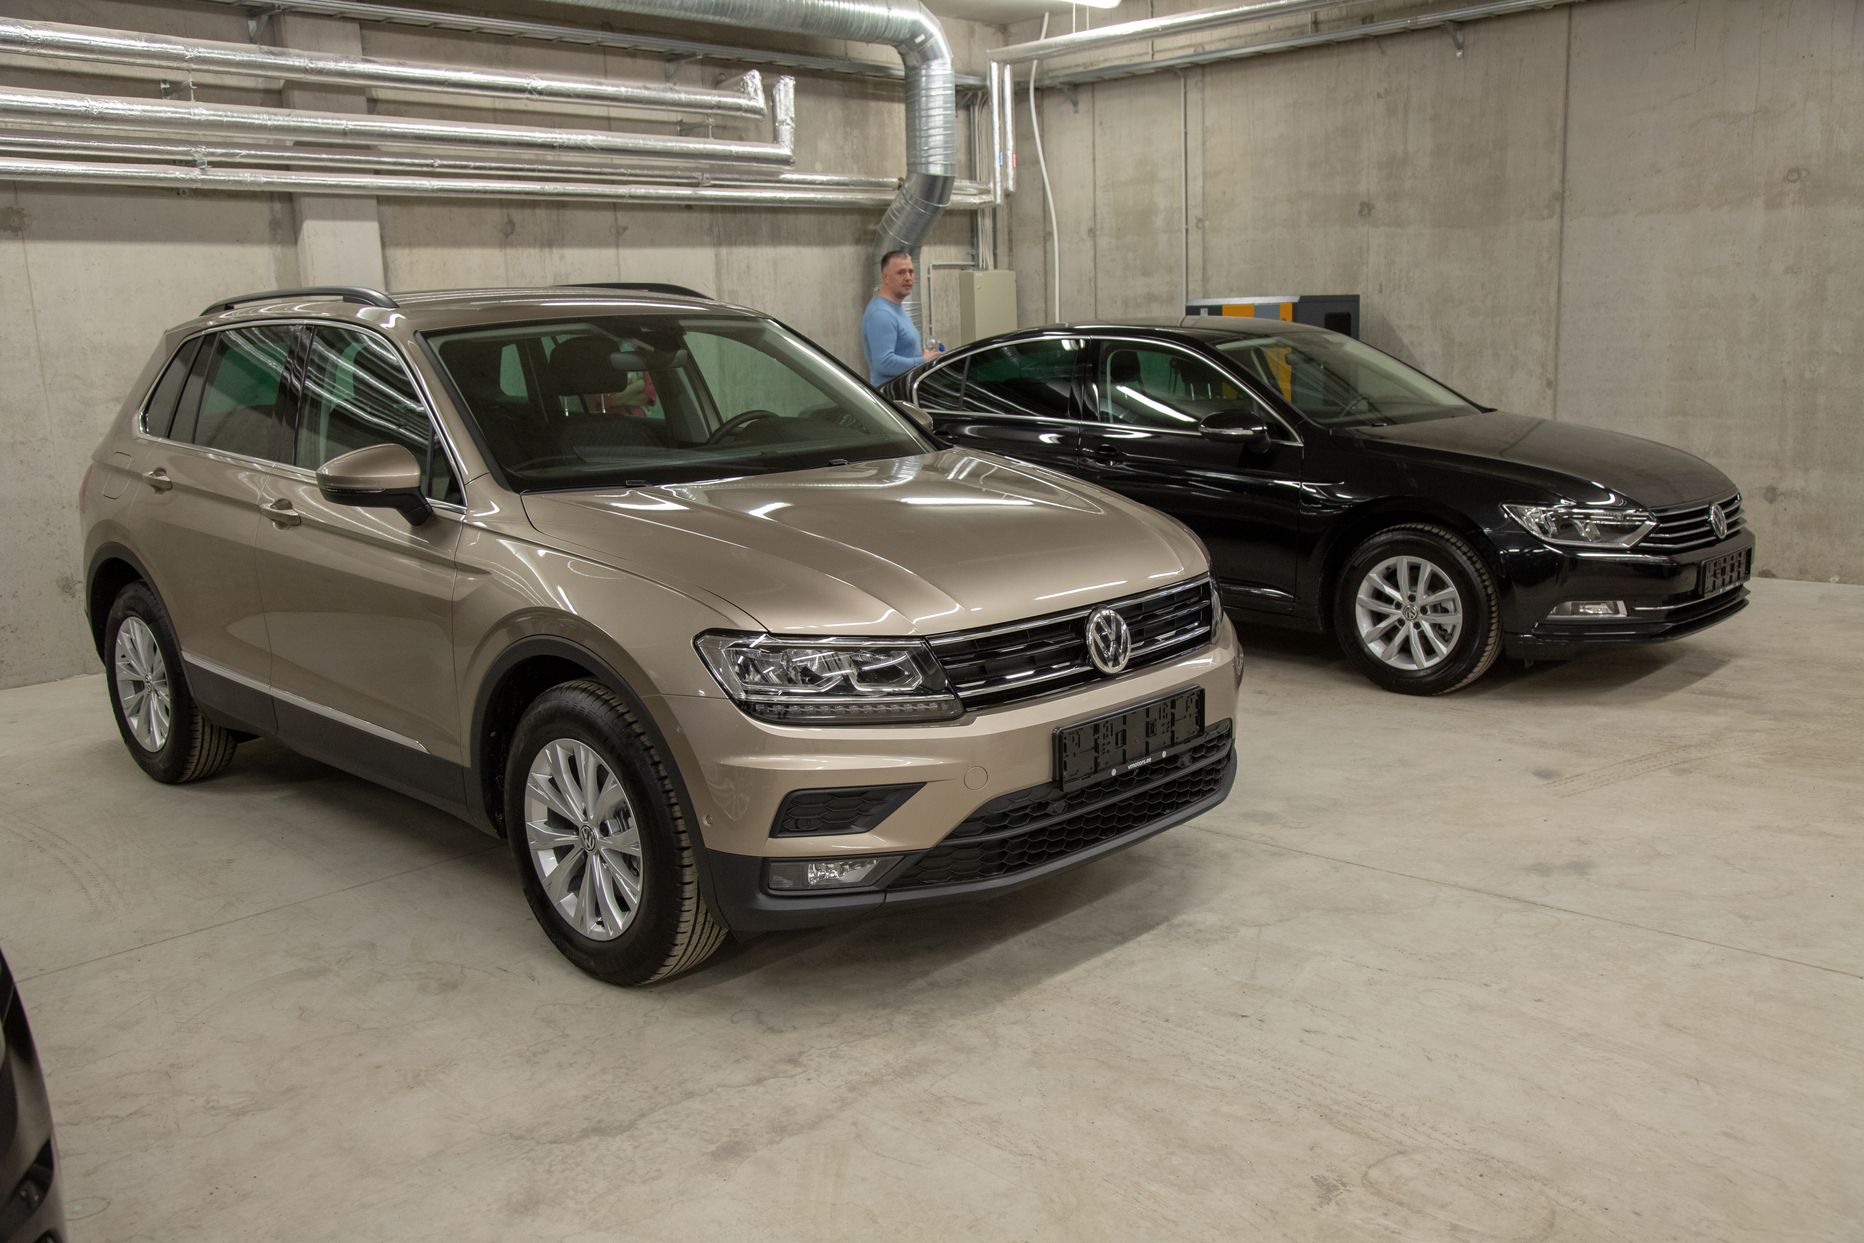 Uued autod Volkswageni esinduses. Pilt on illustratiivne.